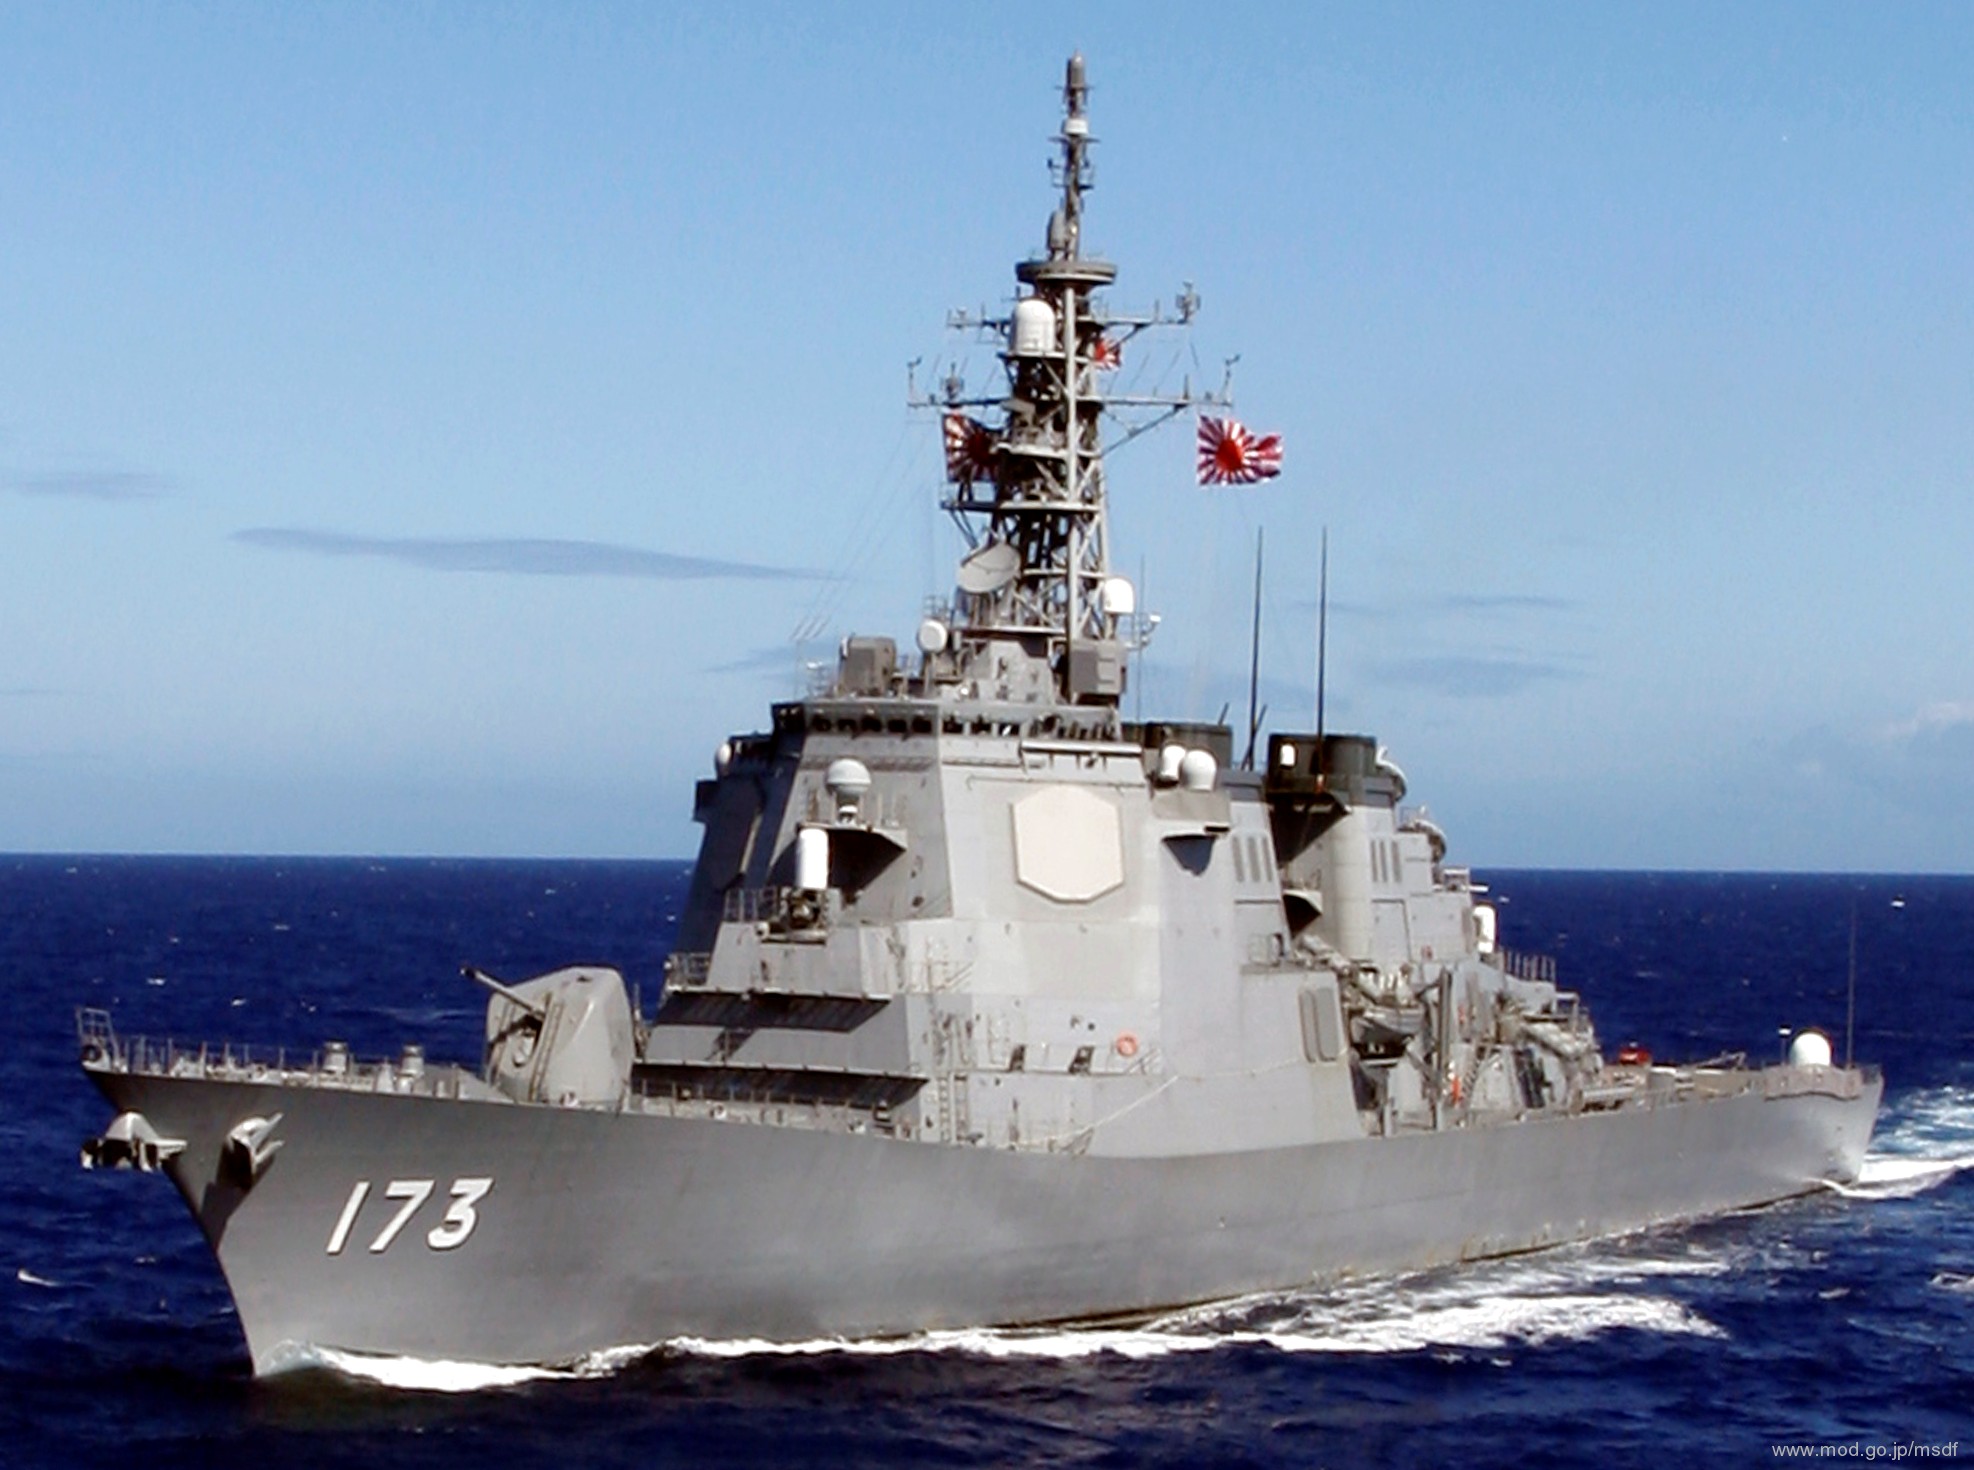 ddg-173 jds kongou guided missile destroyer japan maritime self defense force jmsdf 06